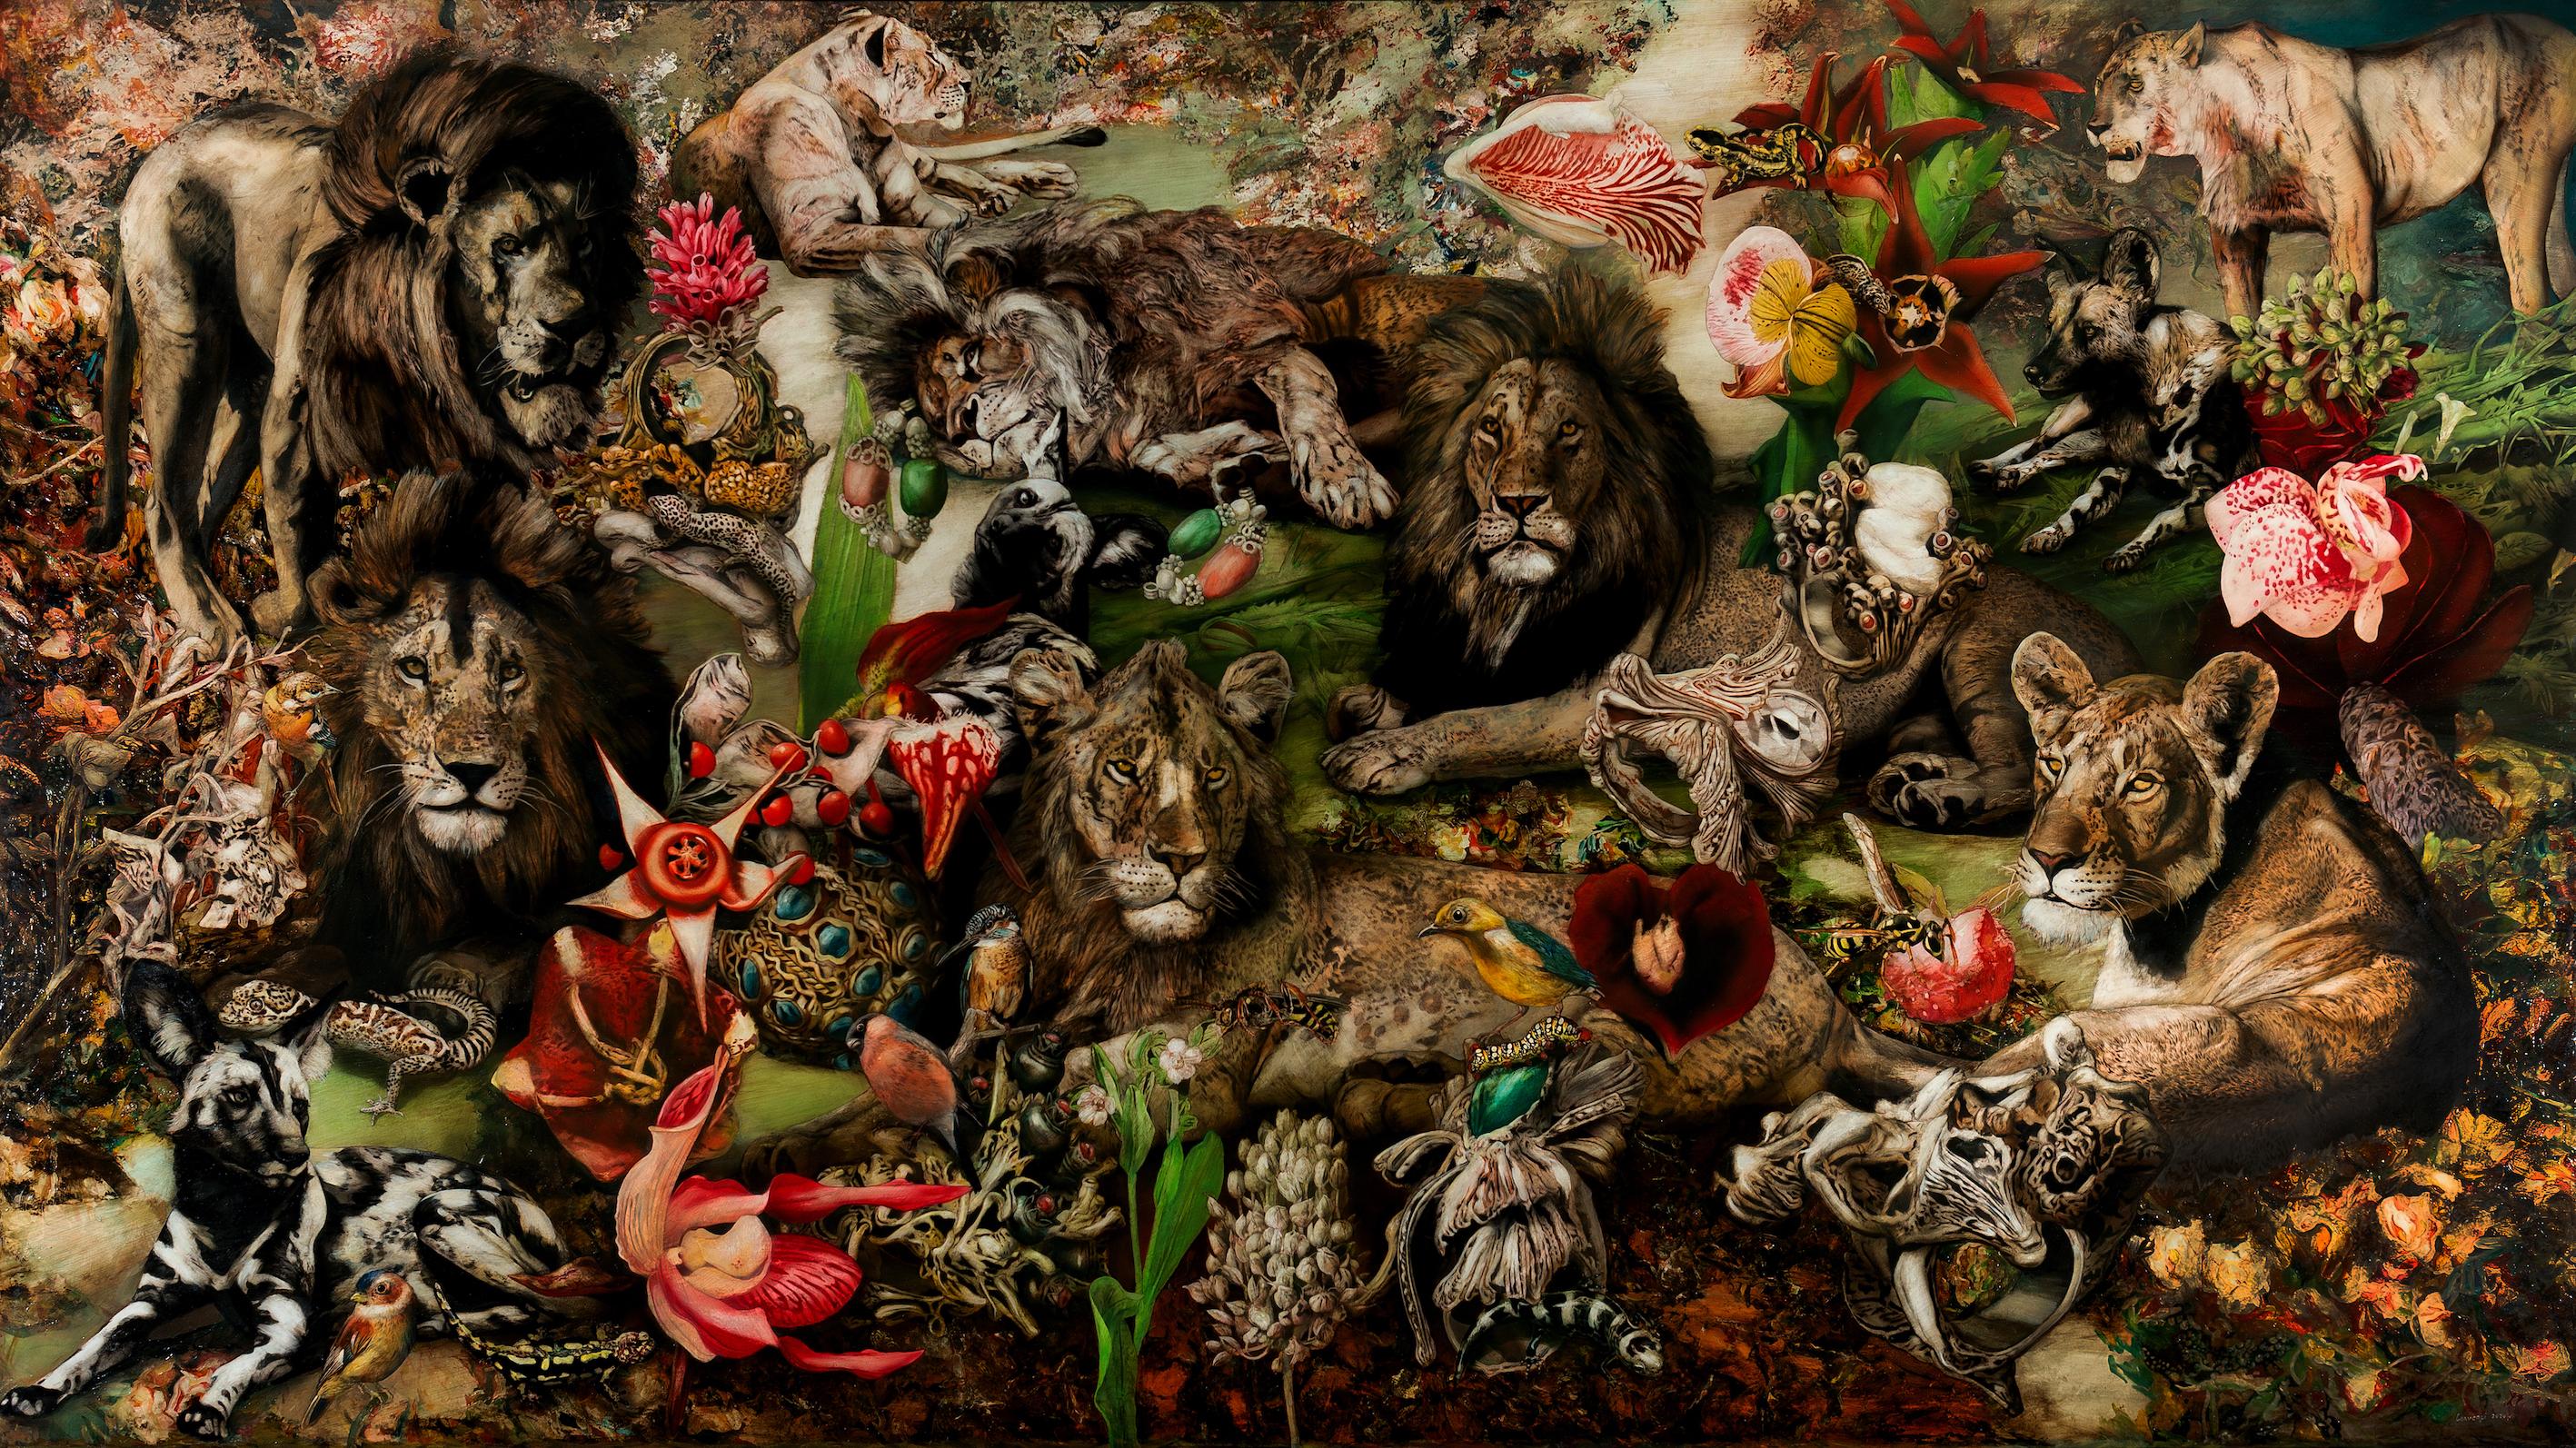 The Lion's Walk - 21e siècle, peinture figurative contemporaine, huile sur toile